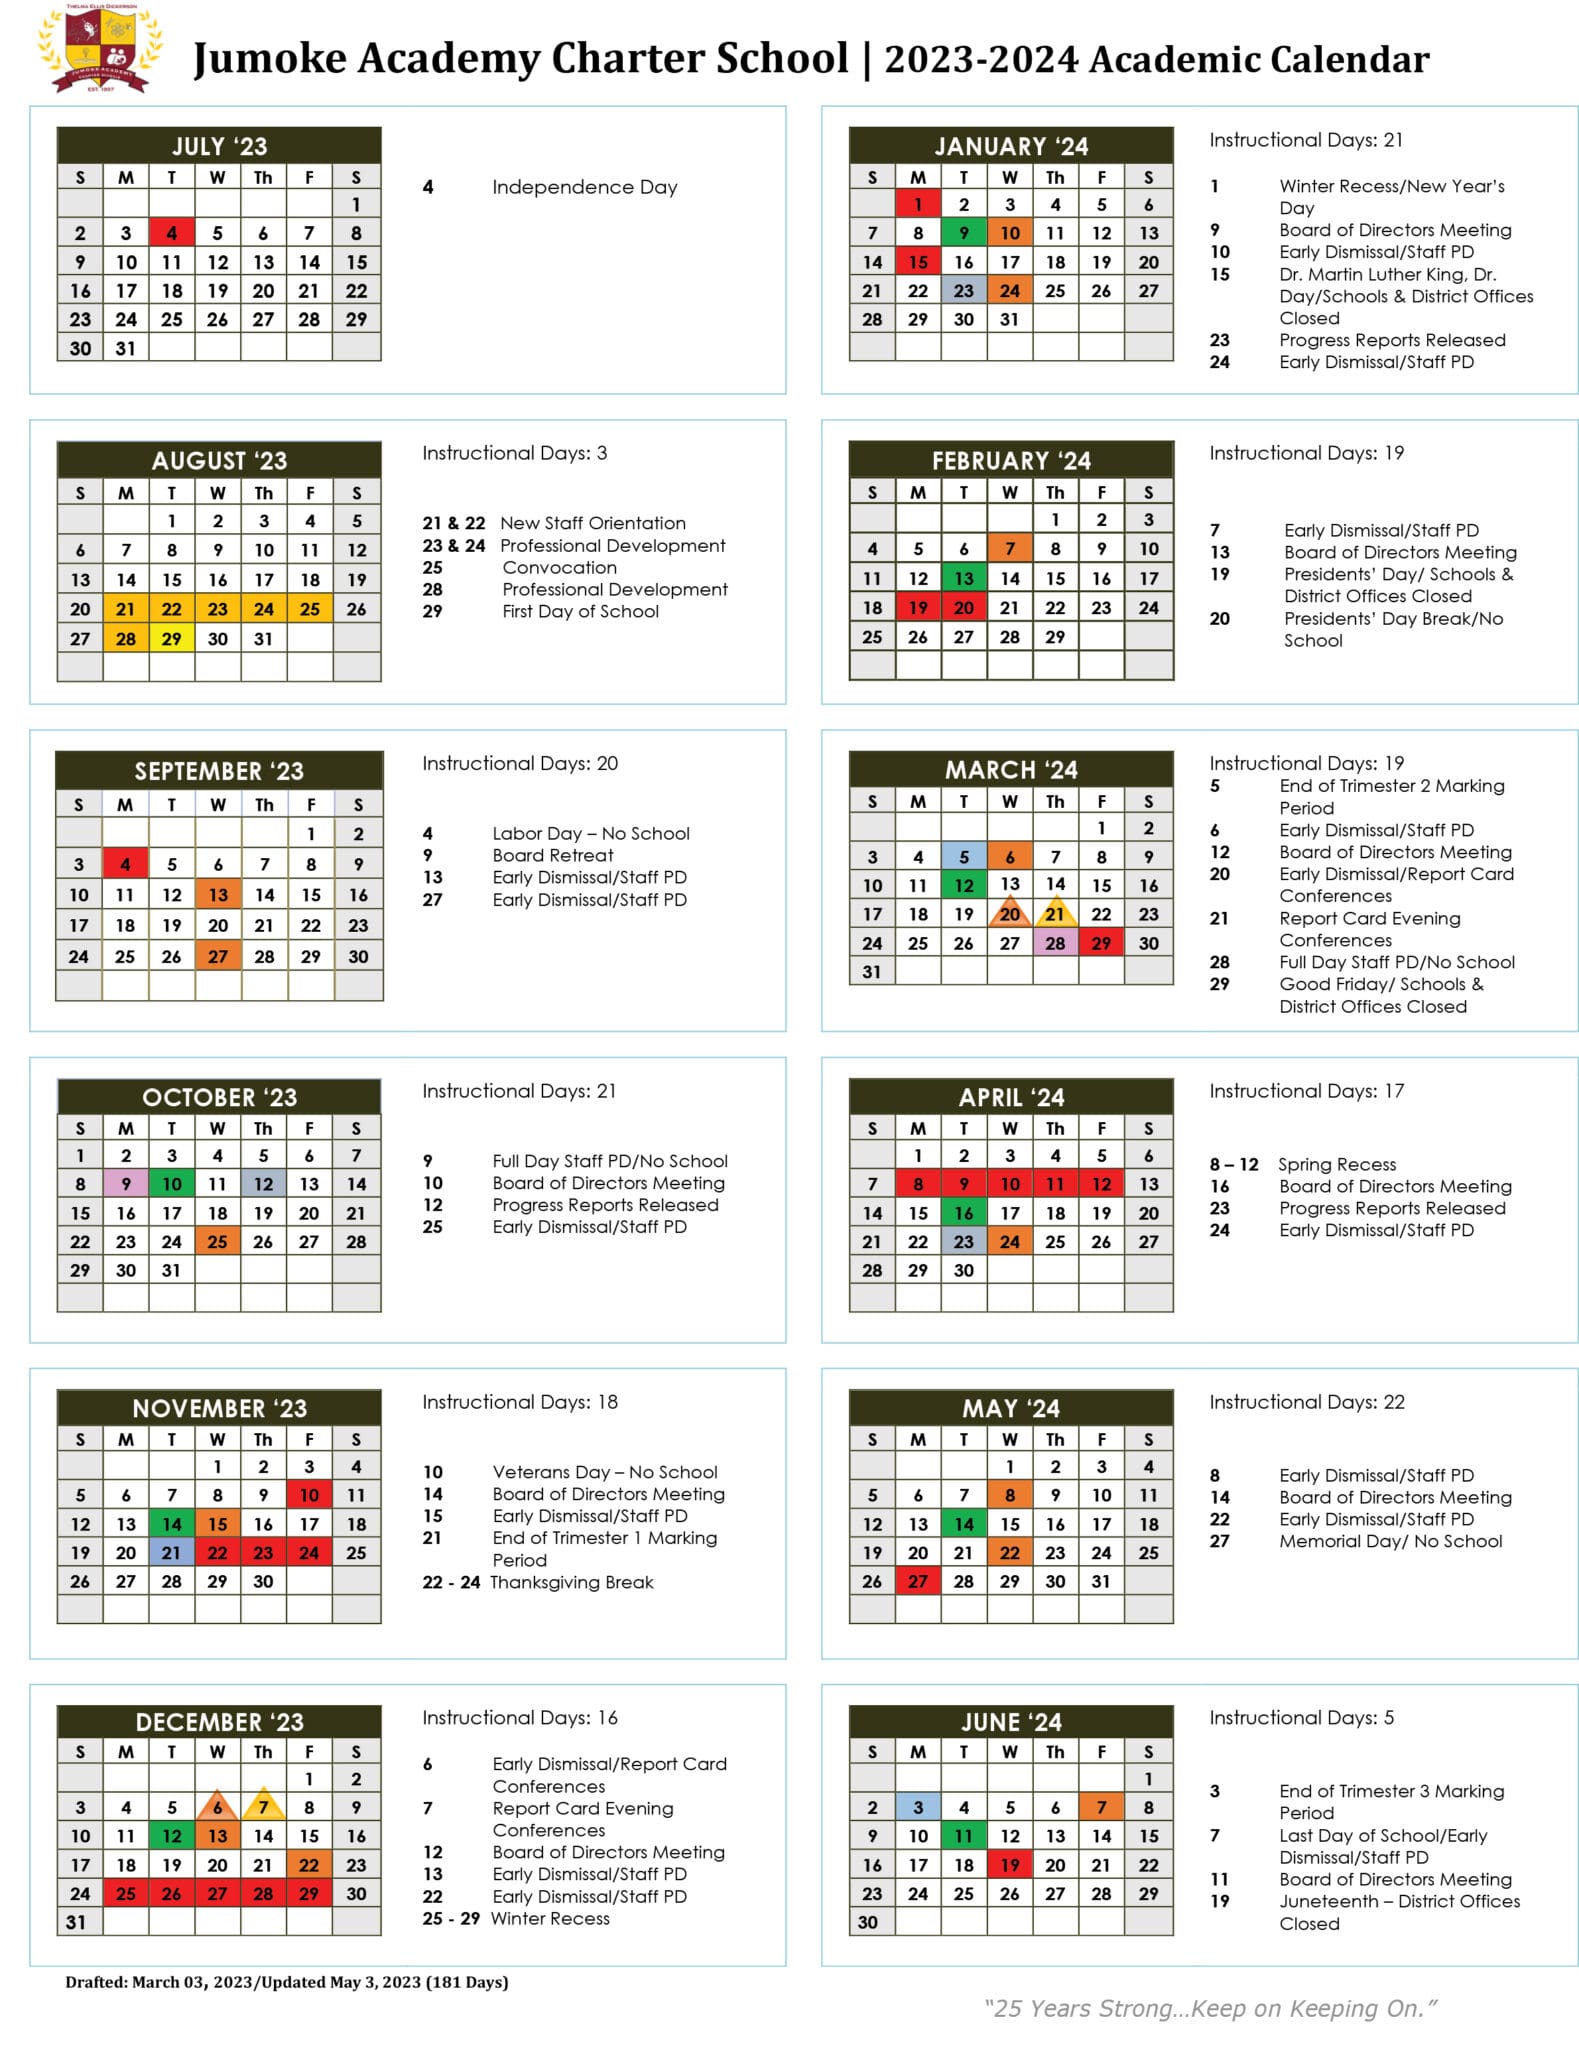 academic-calendar-jumoke-academy